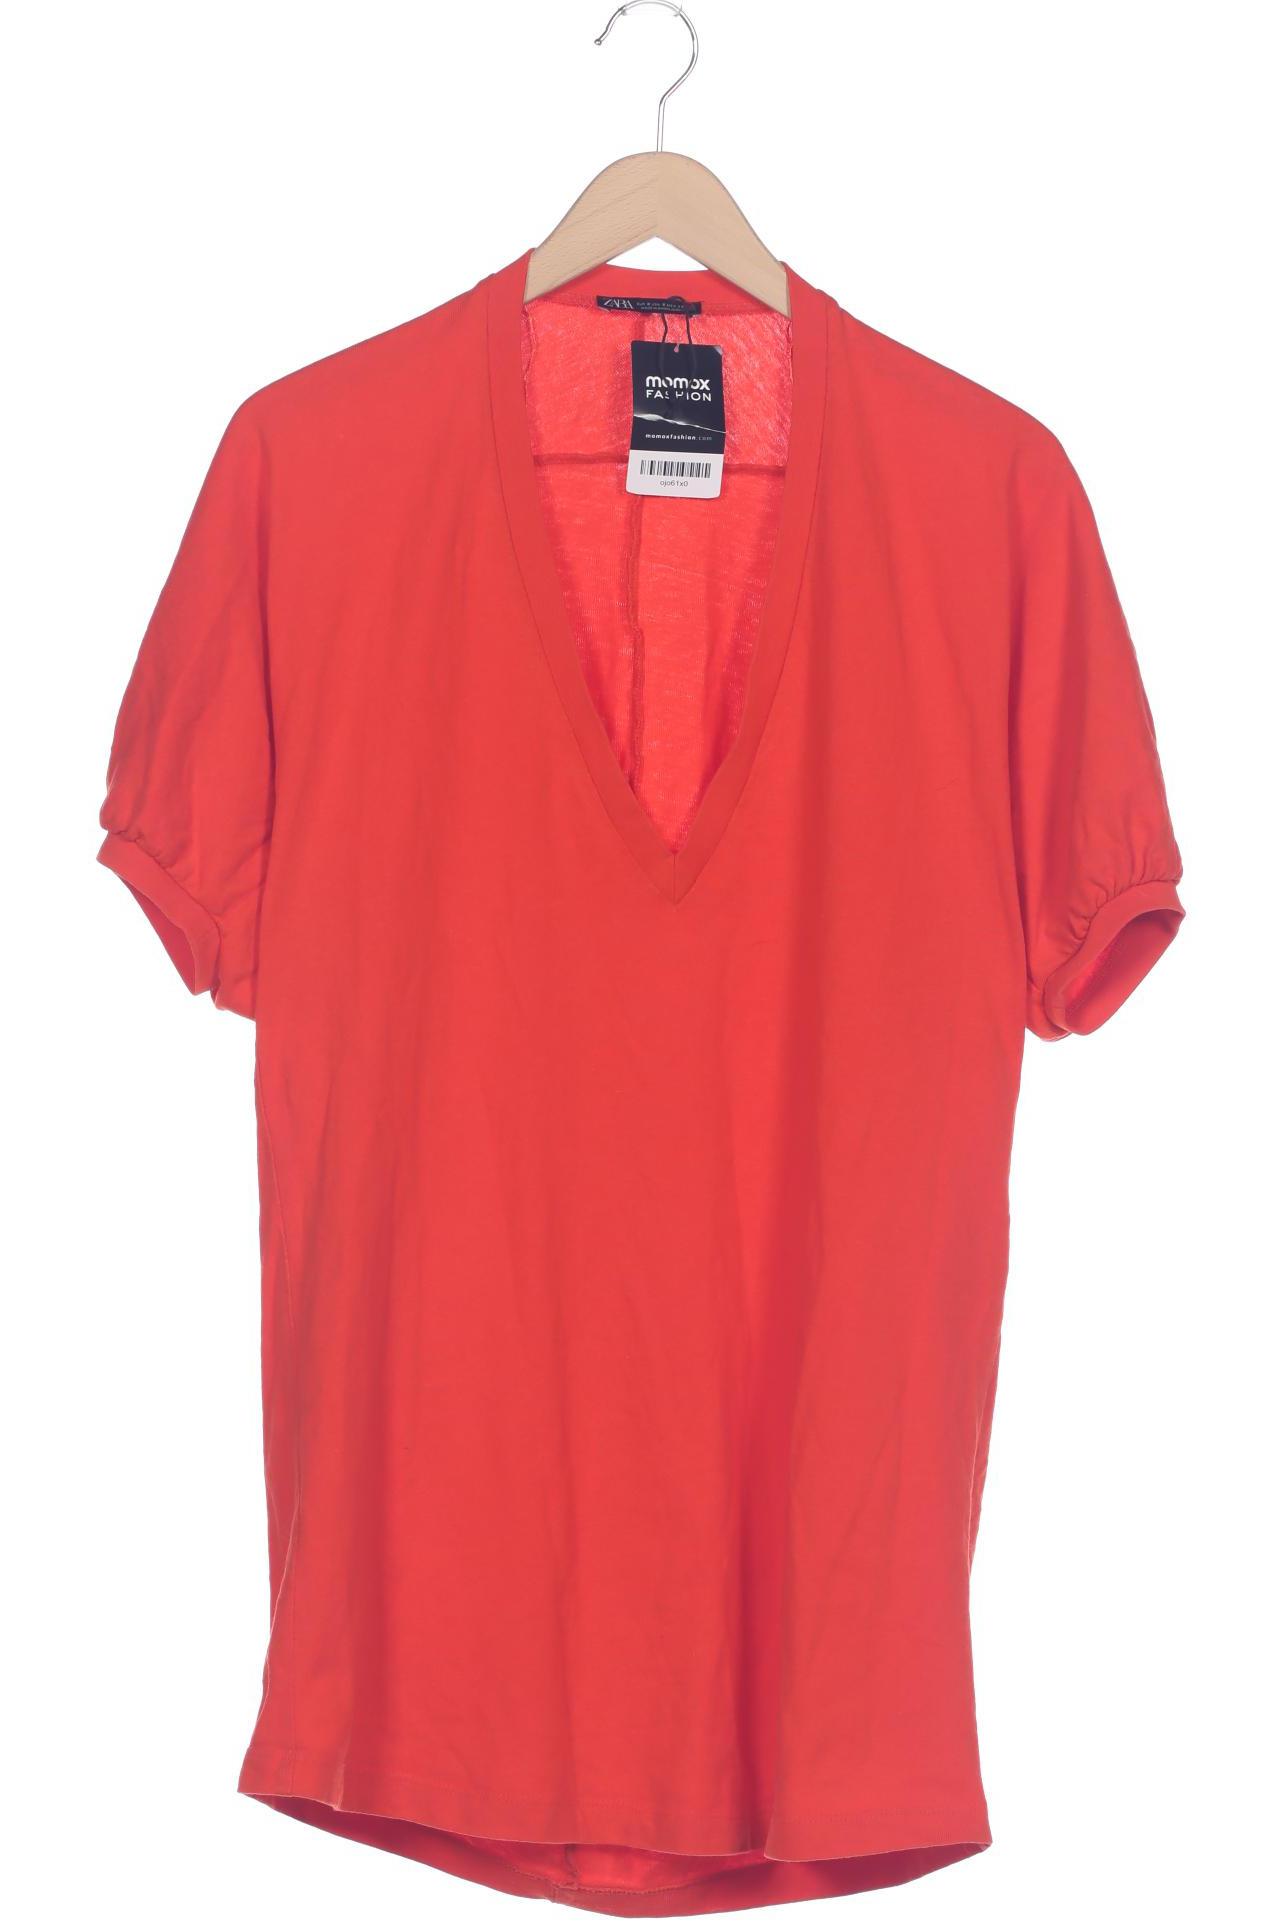 Zara Damen T-Shirt, rot, Gr. 36 von ZARA